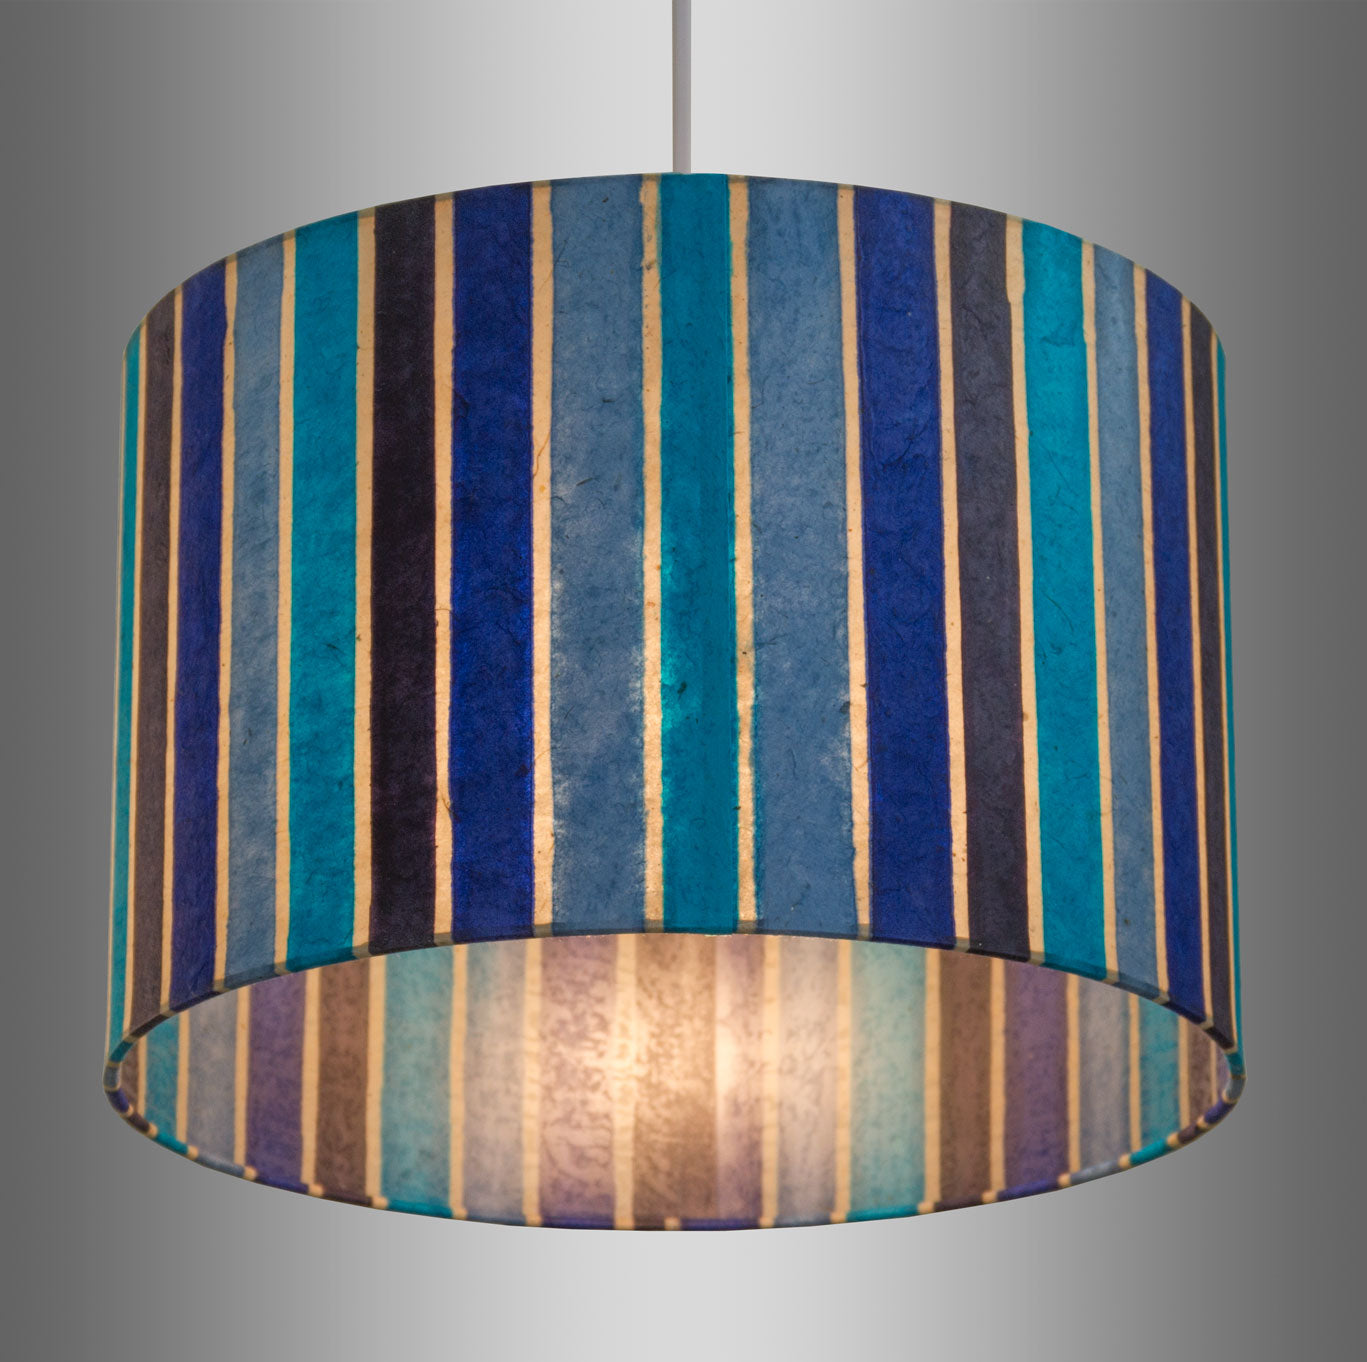 Square Lamp Shade - P05 - Batik Stripes Blue, 30cm(w) x 30cm(h) x 30cm(d)